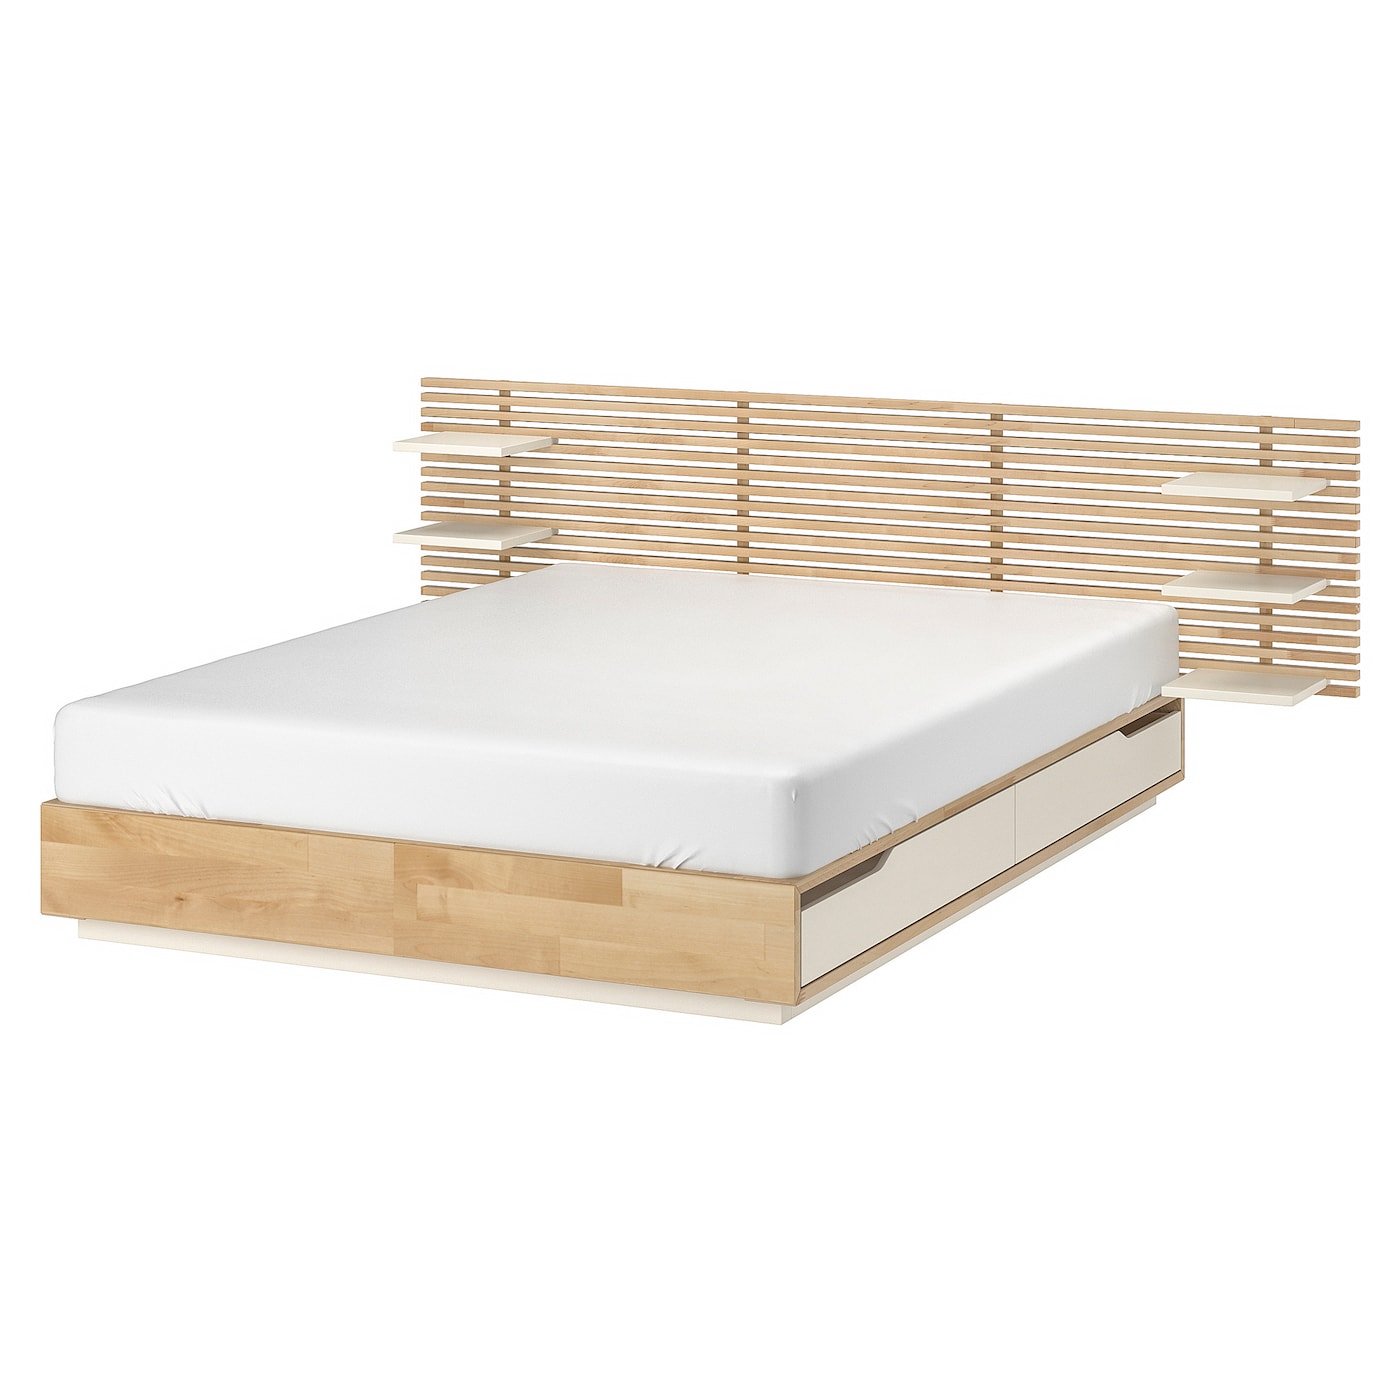 Основание двуспальной кровати - IKEA MANDAL, 200х160 см, береза/белый, МАНДАЛЬ ИКЕА